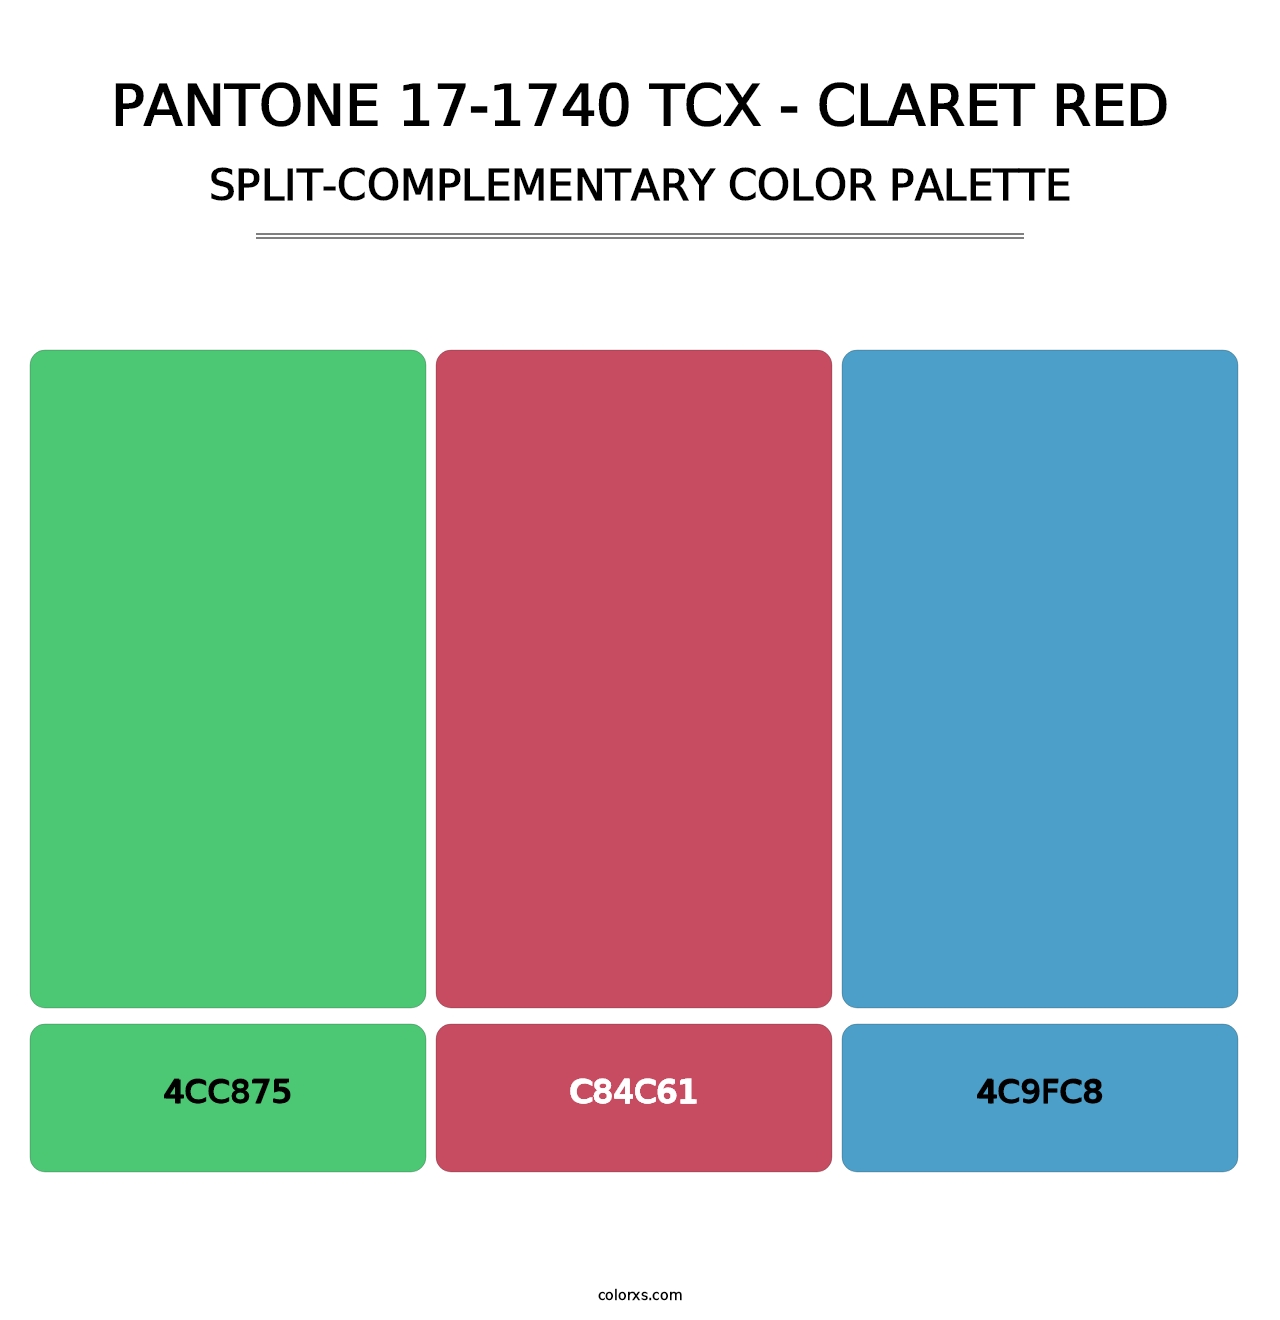 PANTONE 17-1740 TCX - Claret Red - Split-Complementary Color Palette